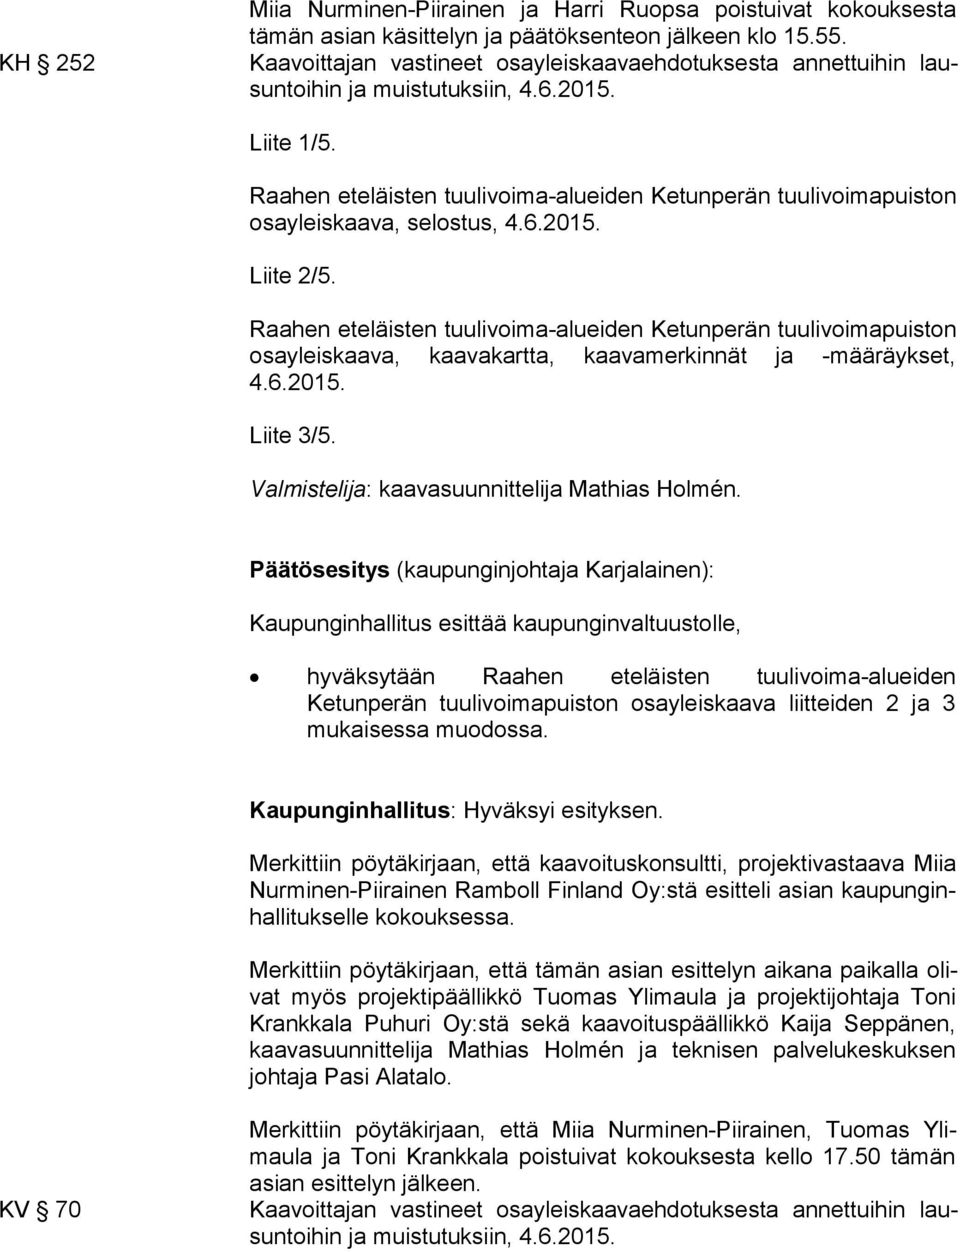 Raahen eteläisten tuulivoima-alueiden Ketunperän tuulivoimapuiston osa yleis kaa va, selostus, 4.6.2015. Liite 2/5.